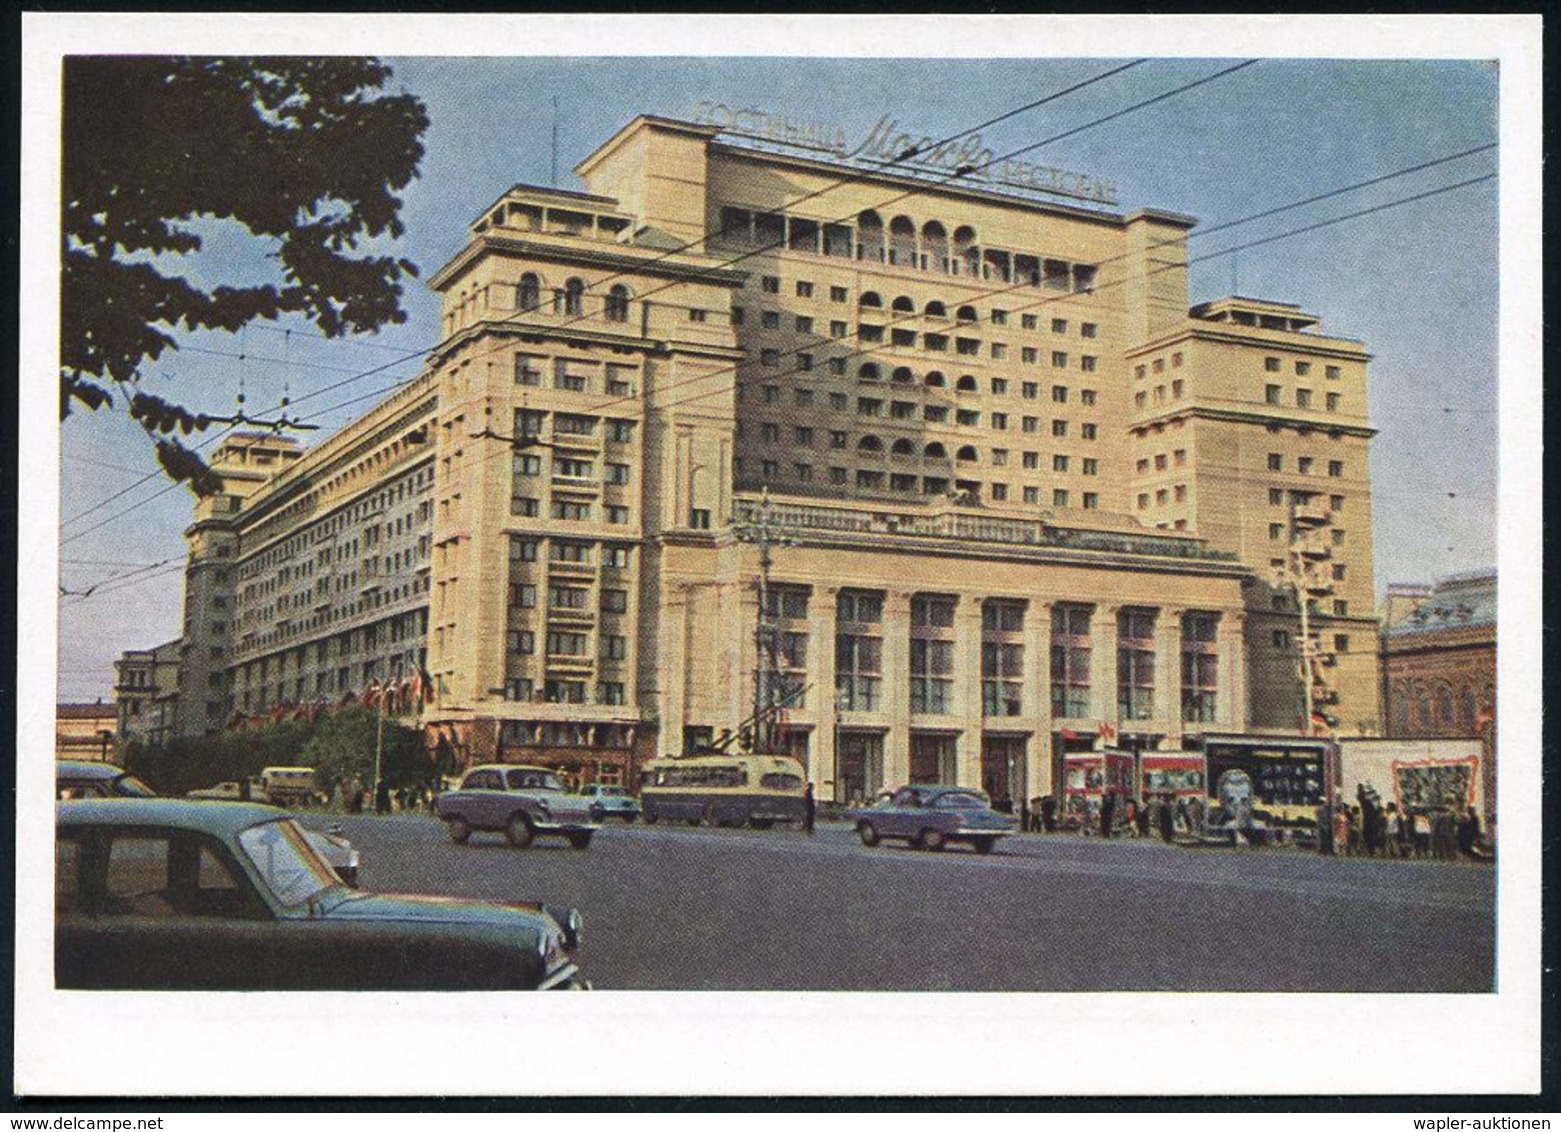 OMNIBUS / OMNIBUS-HERSTELLER : UdSSR 1963 3 Kop. BiP Rakete, Grün: MOSKAU, Hotel "Moskau" Mit Trolleybus U. Fahrdrähten  - Bus